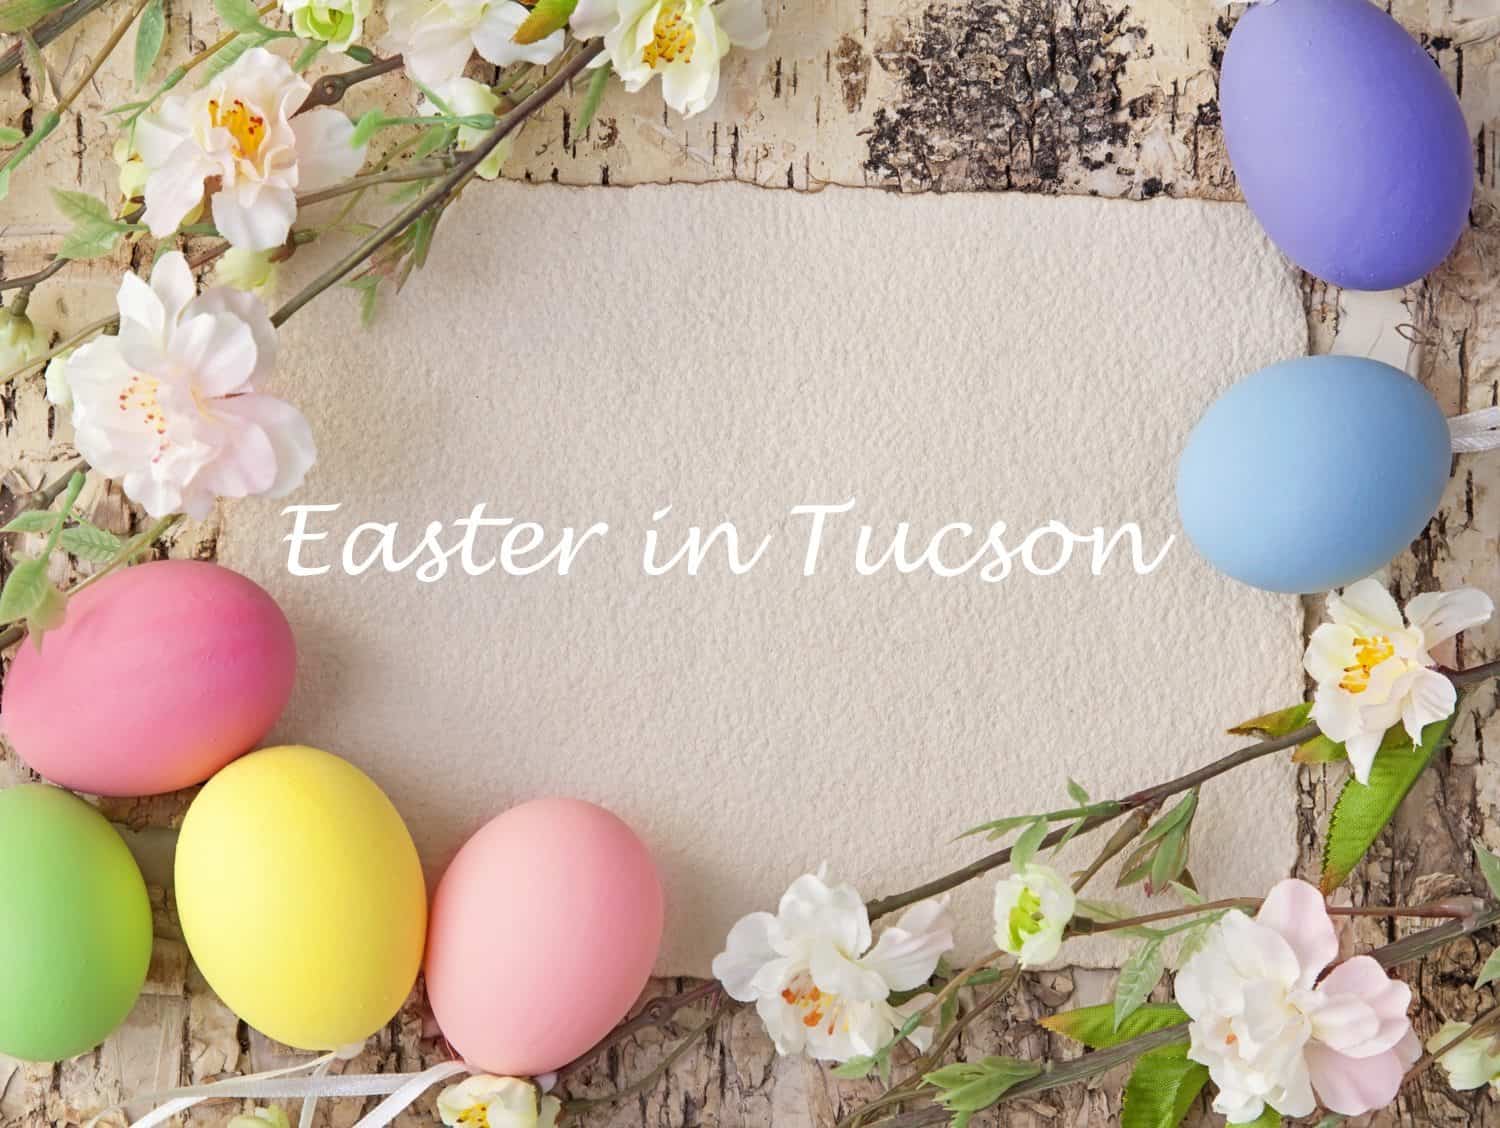 Tucson Easter